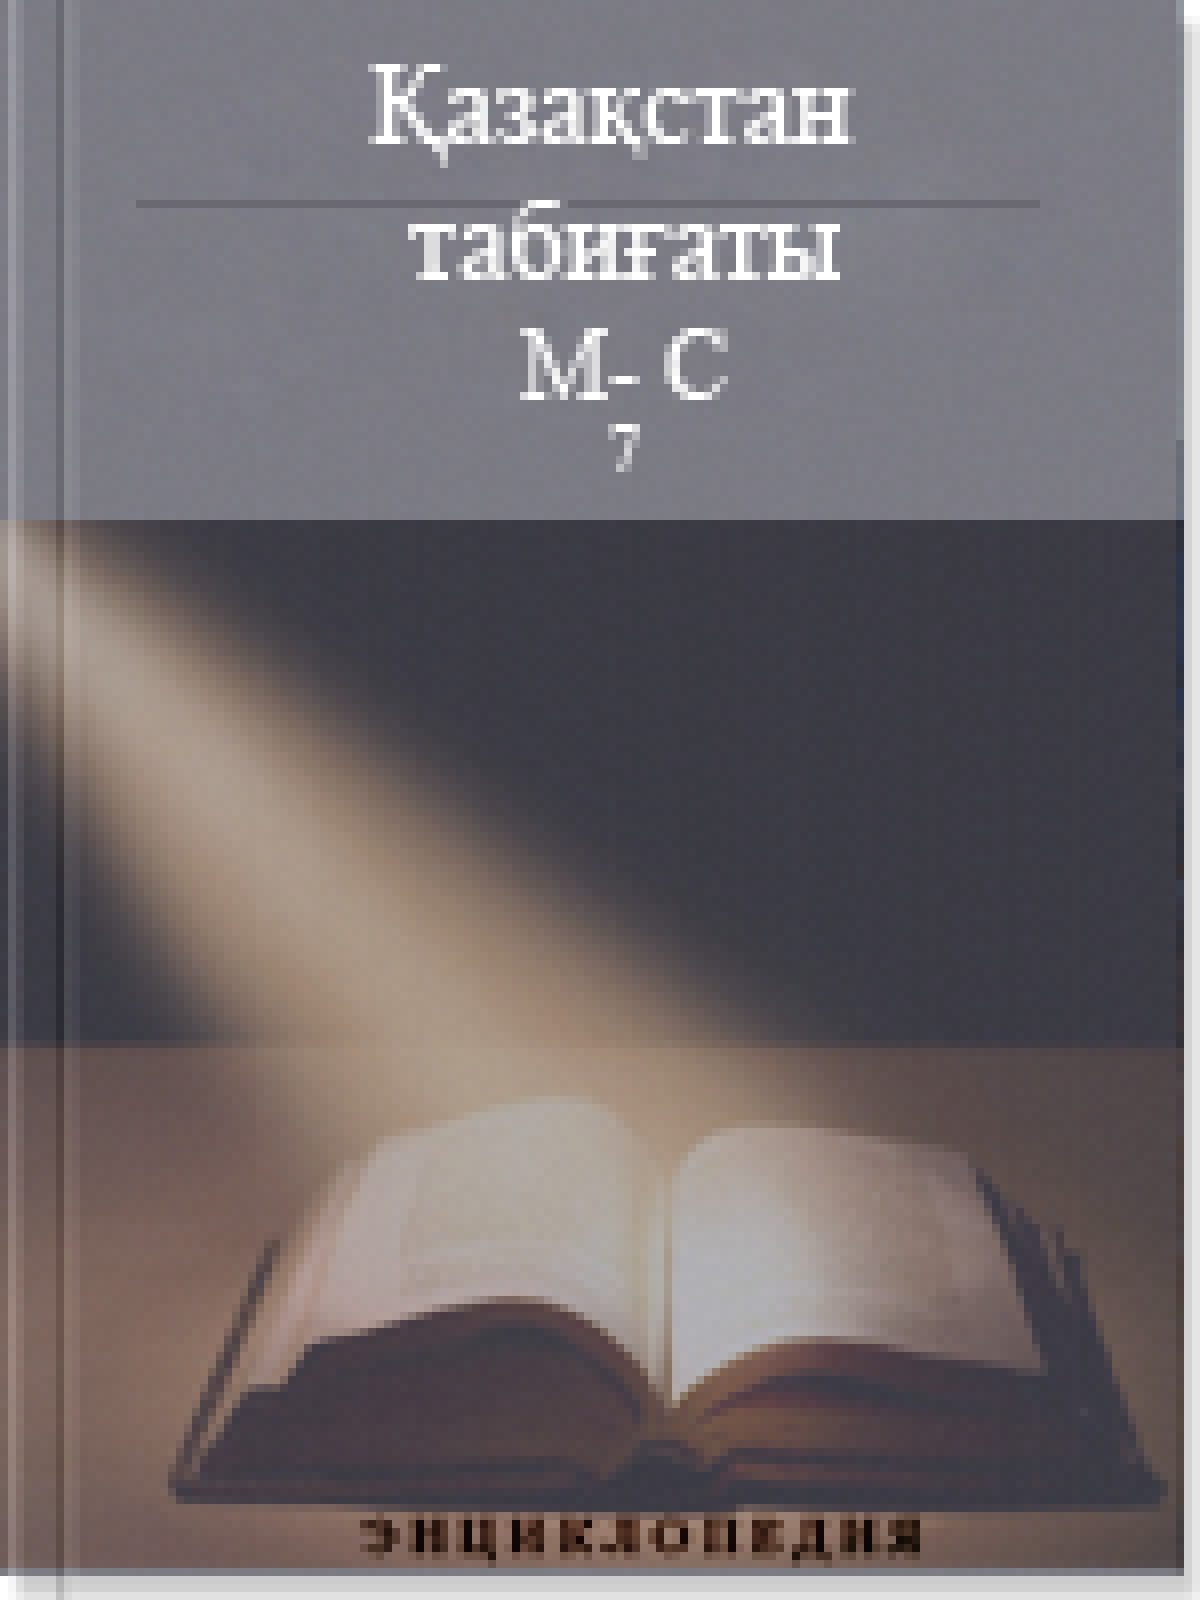 Қазақстан табиғаты 4 том М-С (7)